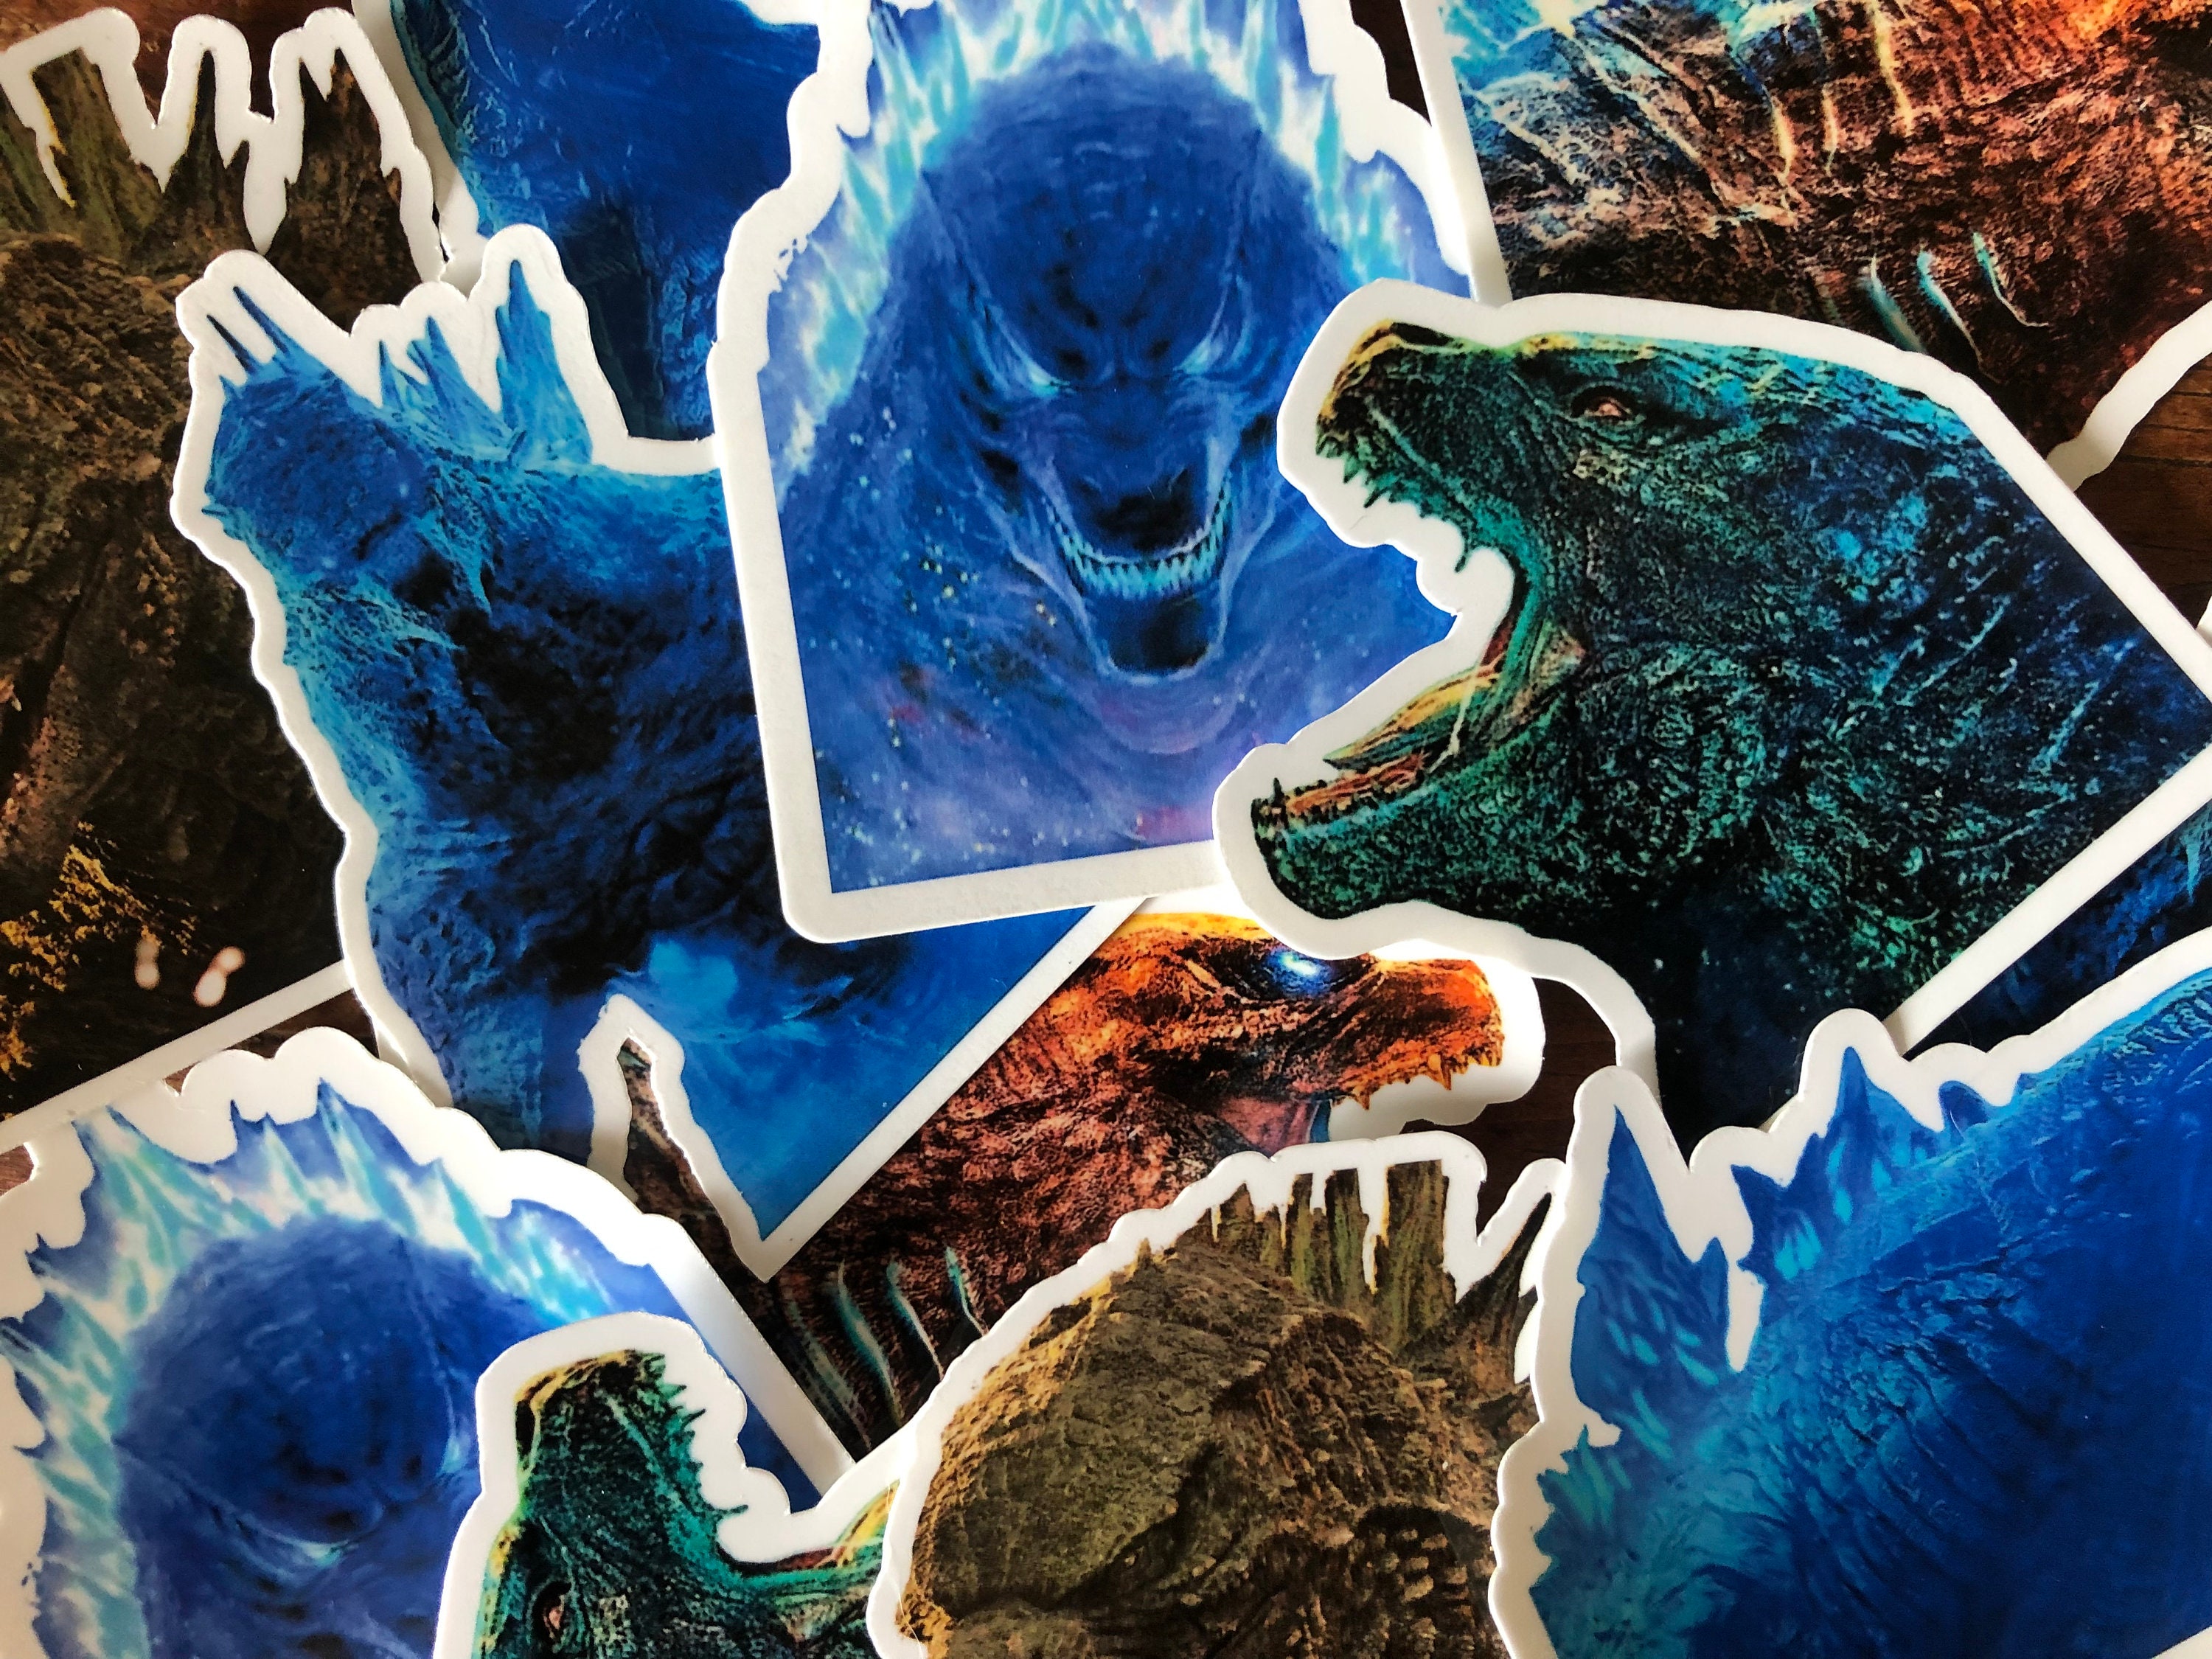 Godzilla sticker // Glossy vinyl sticker